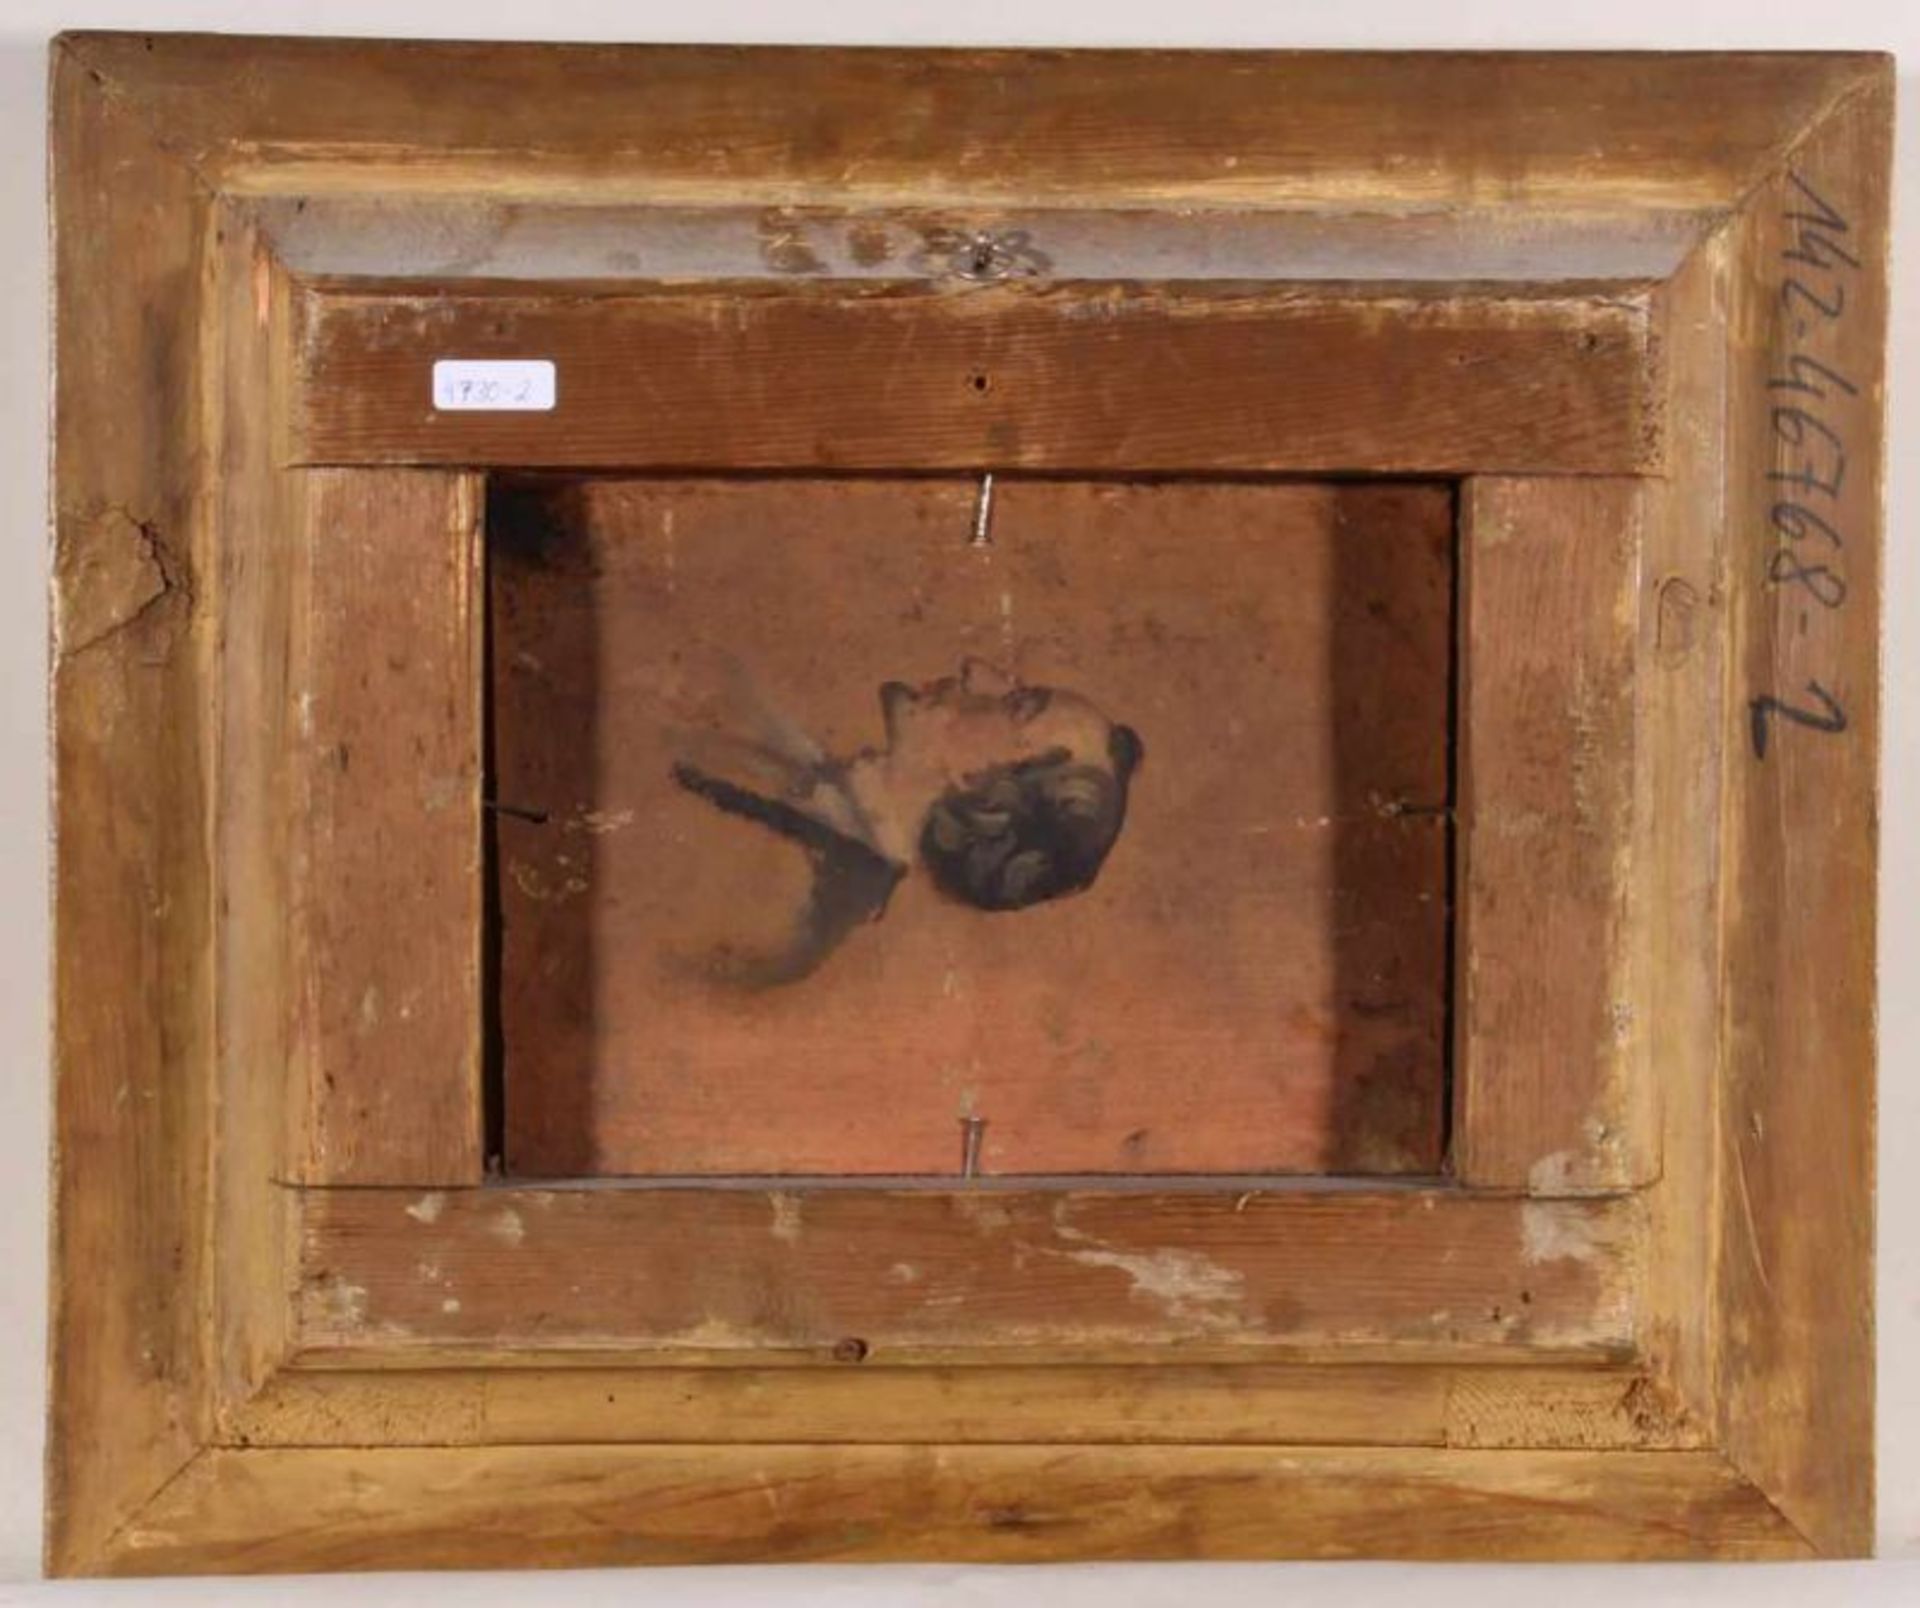 Unbekannter Maler (19. Jh.), "Eislaufvergnügen", Öl auf Holz, 18 x 24 cm, verso Porträtstudie 20. - Image 3 of 3